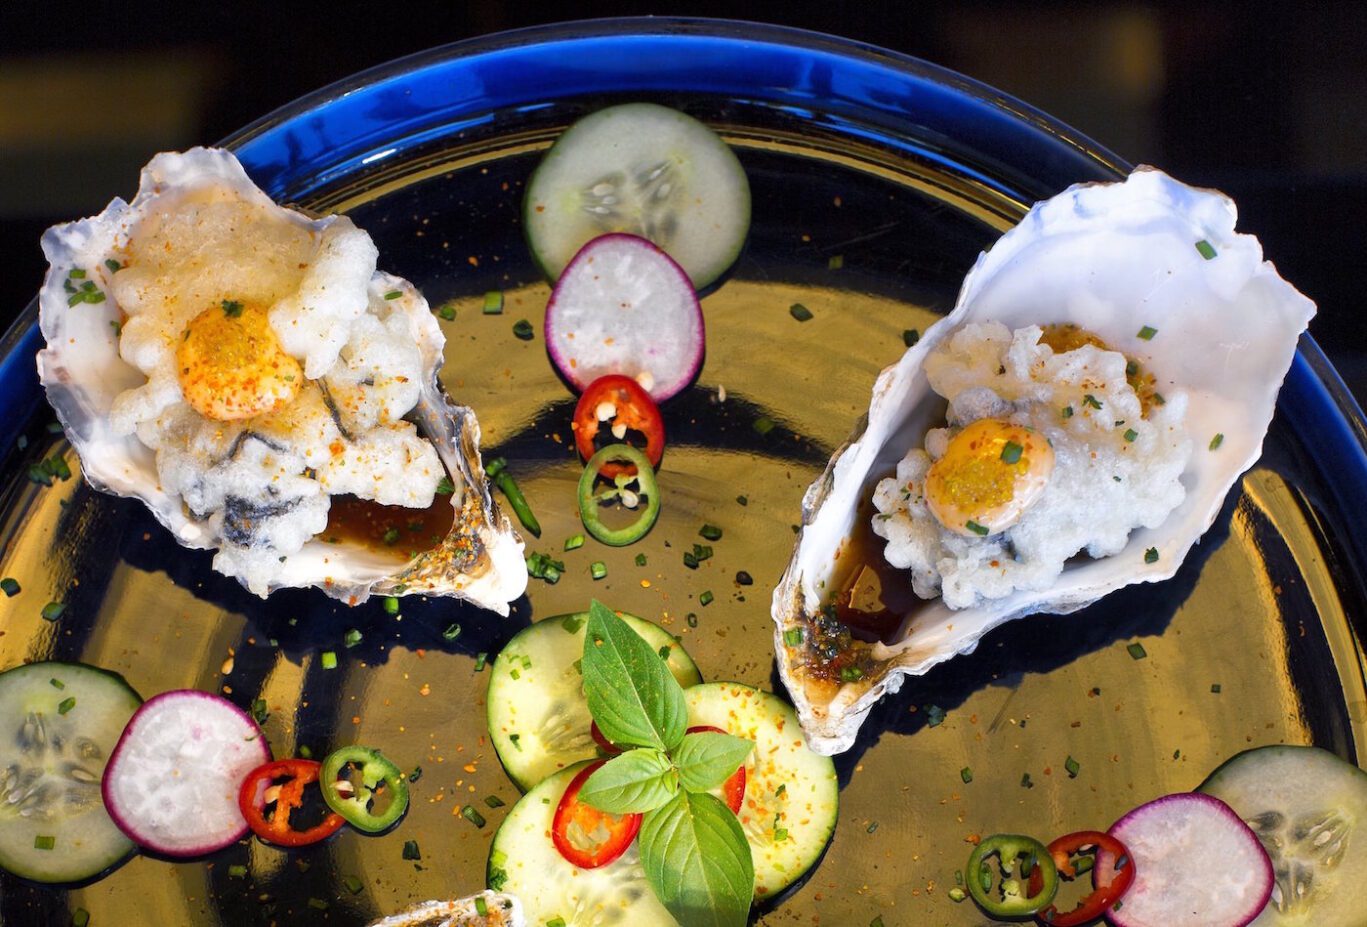 Best-Asian-Cuisine-Greece-Sushi-Oysters-Zakynthos_17-2317-1728px